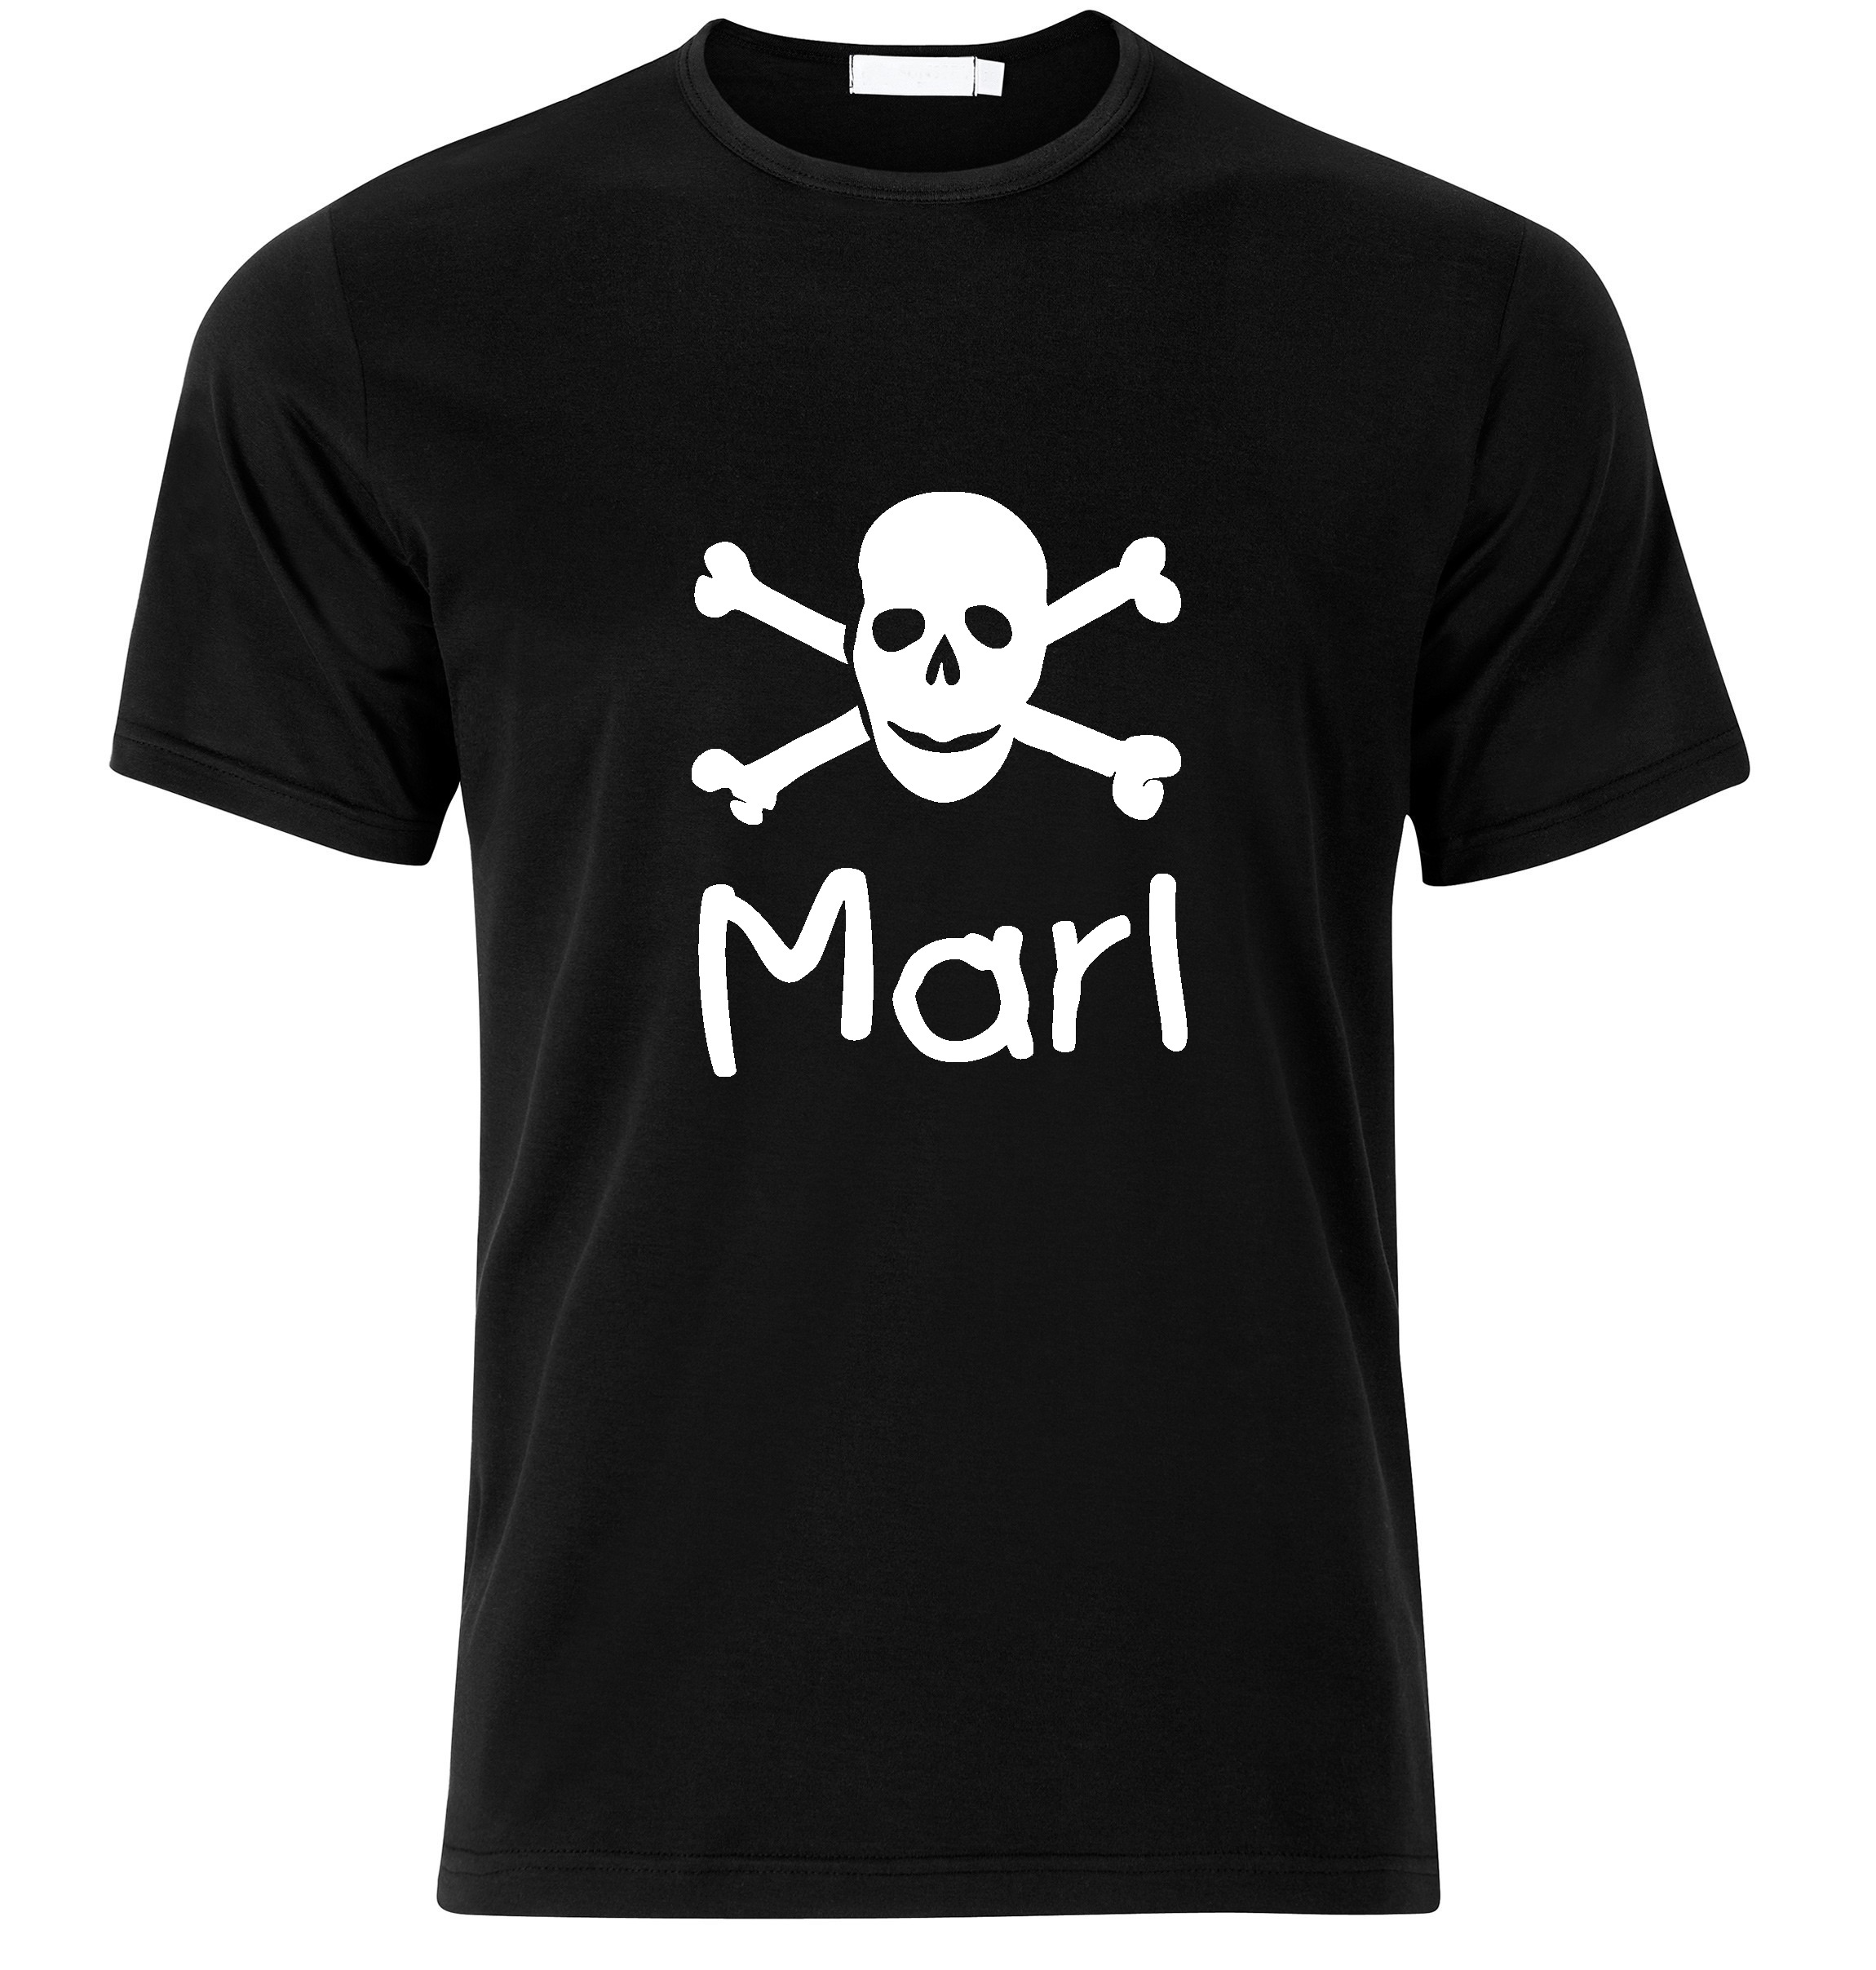 T-Shirt Marl Jolly Roger, Totenkopf